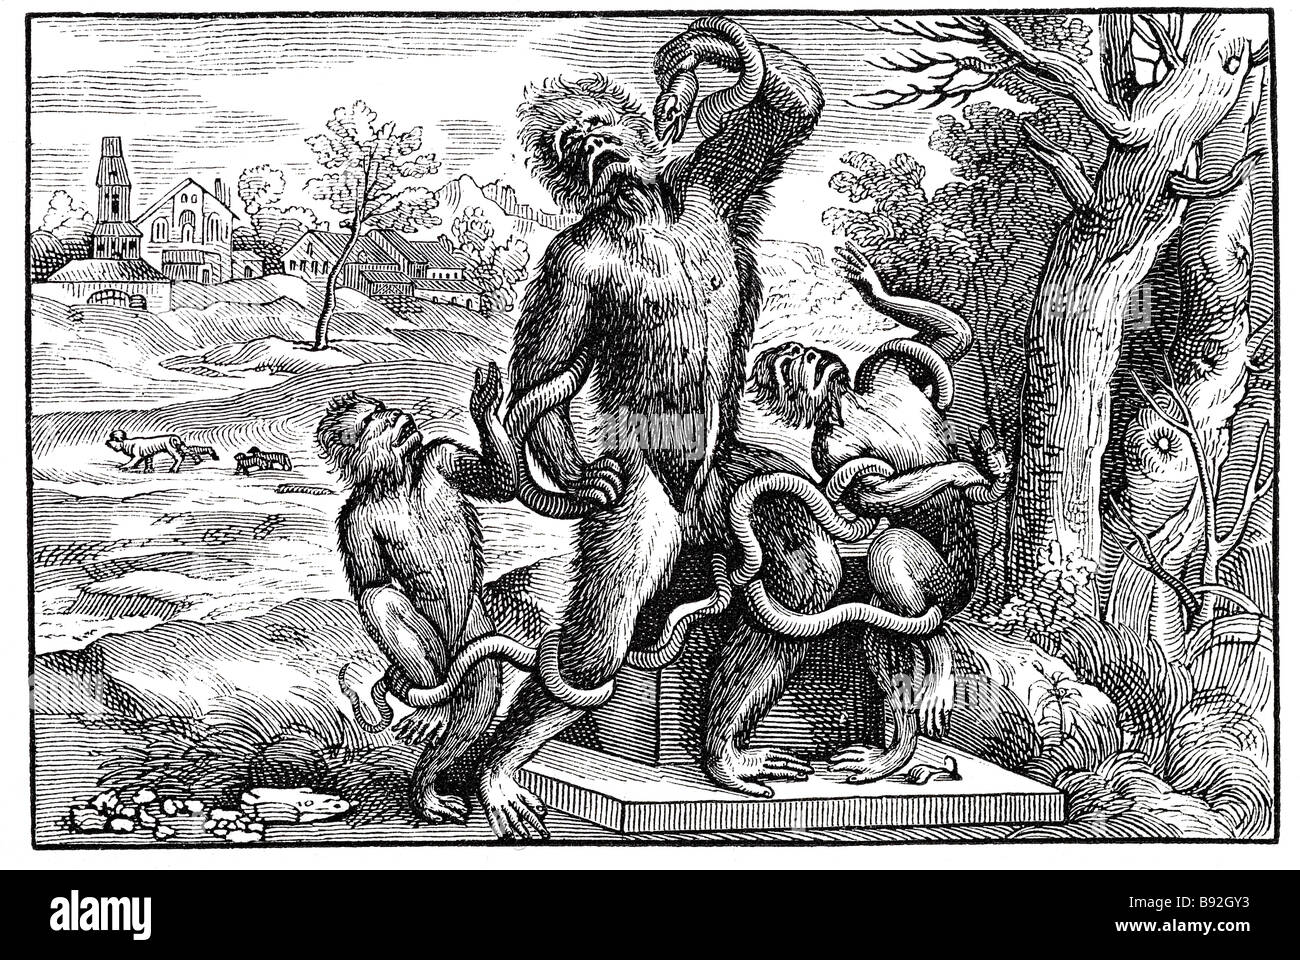 Carivature voulant un singe vieux laocoon queue poilue serpent serpant singes village néolithique sauvage ou Berthe Morisot Tiziano Vecellio Banque D'Images